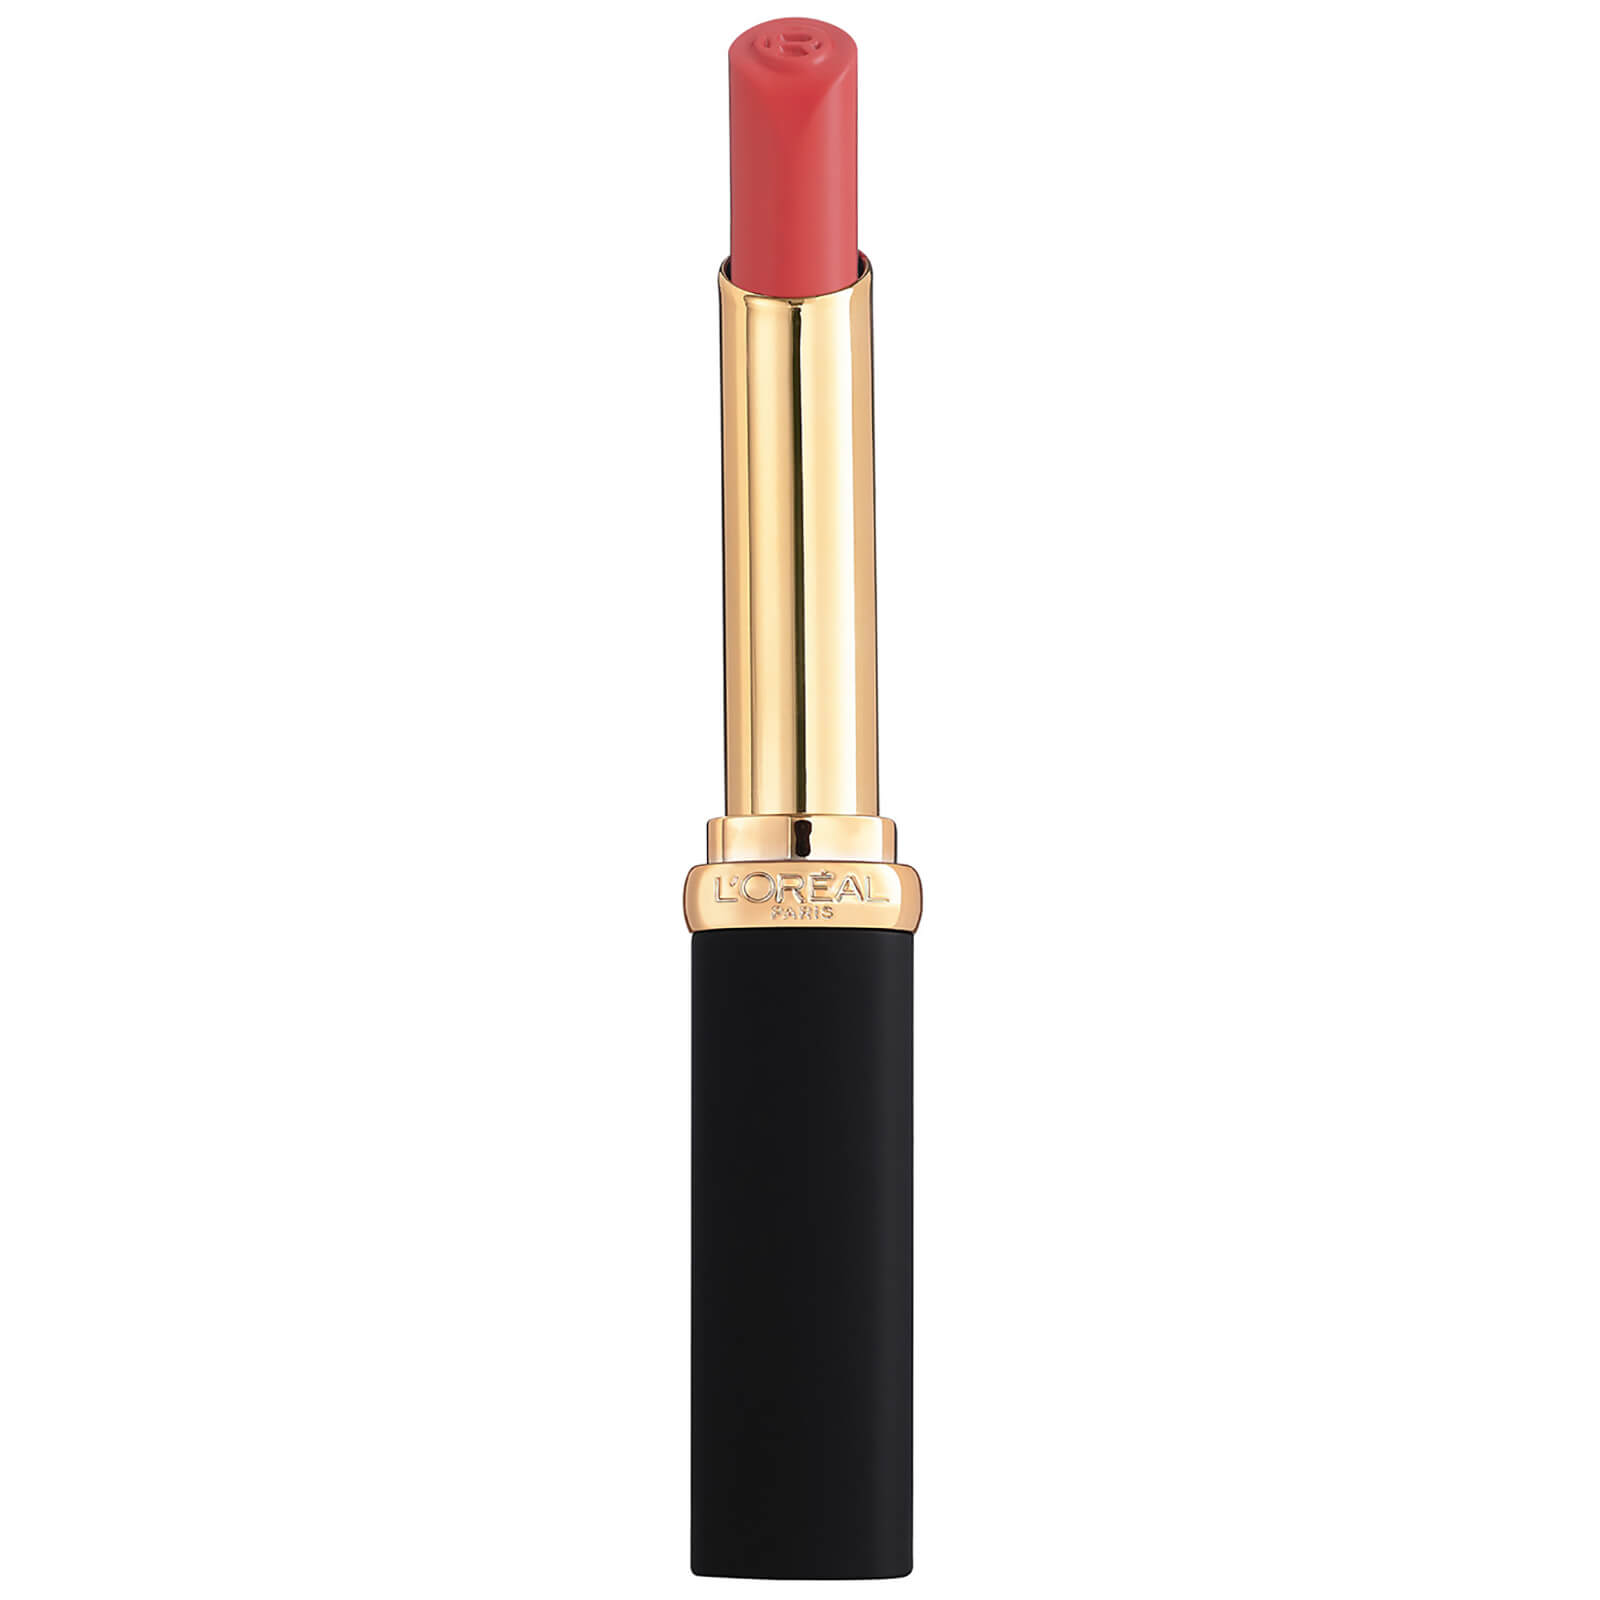 L'oréal Paris L'oreal Paris Colour Riche Intense Volume Matte Lipstick 25g (various Shades) - Coral Irreverent